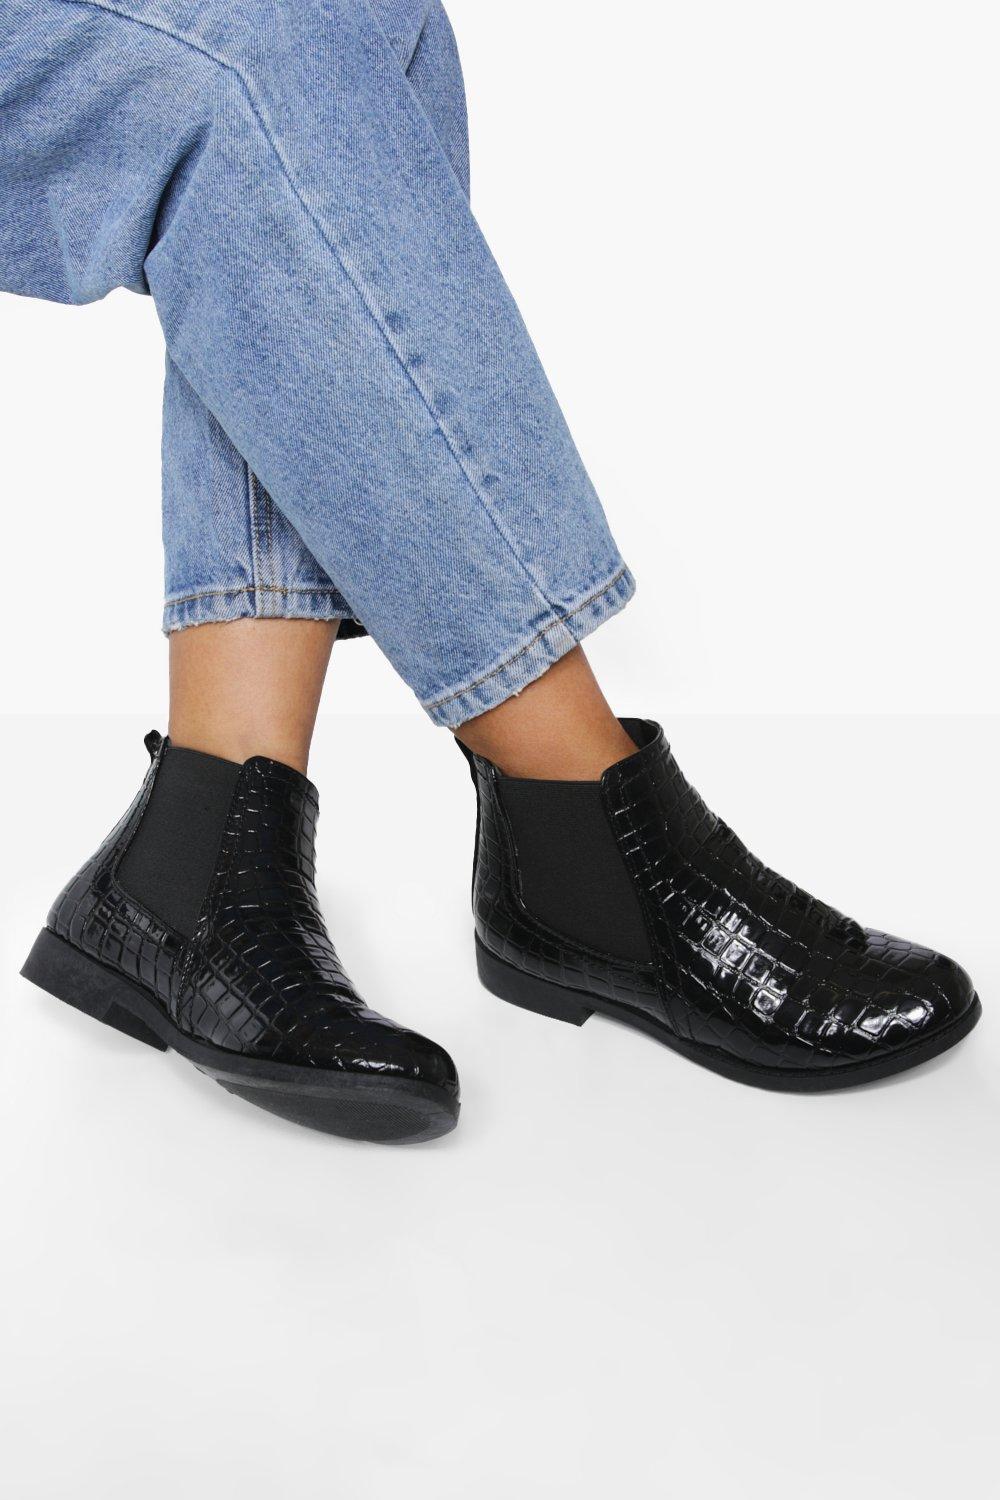 Patent Croc Chelsea Boots | Boohoo UK